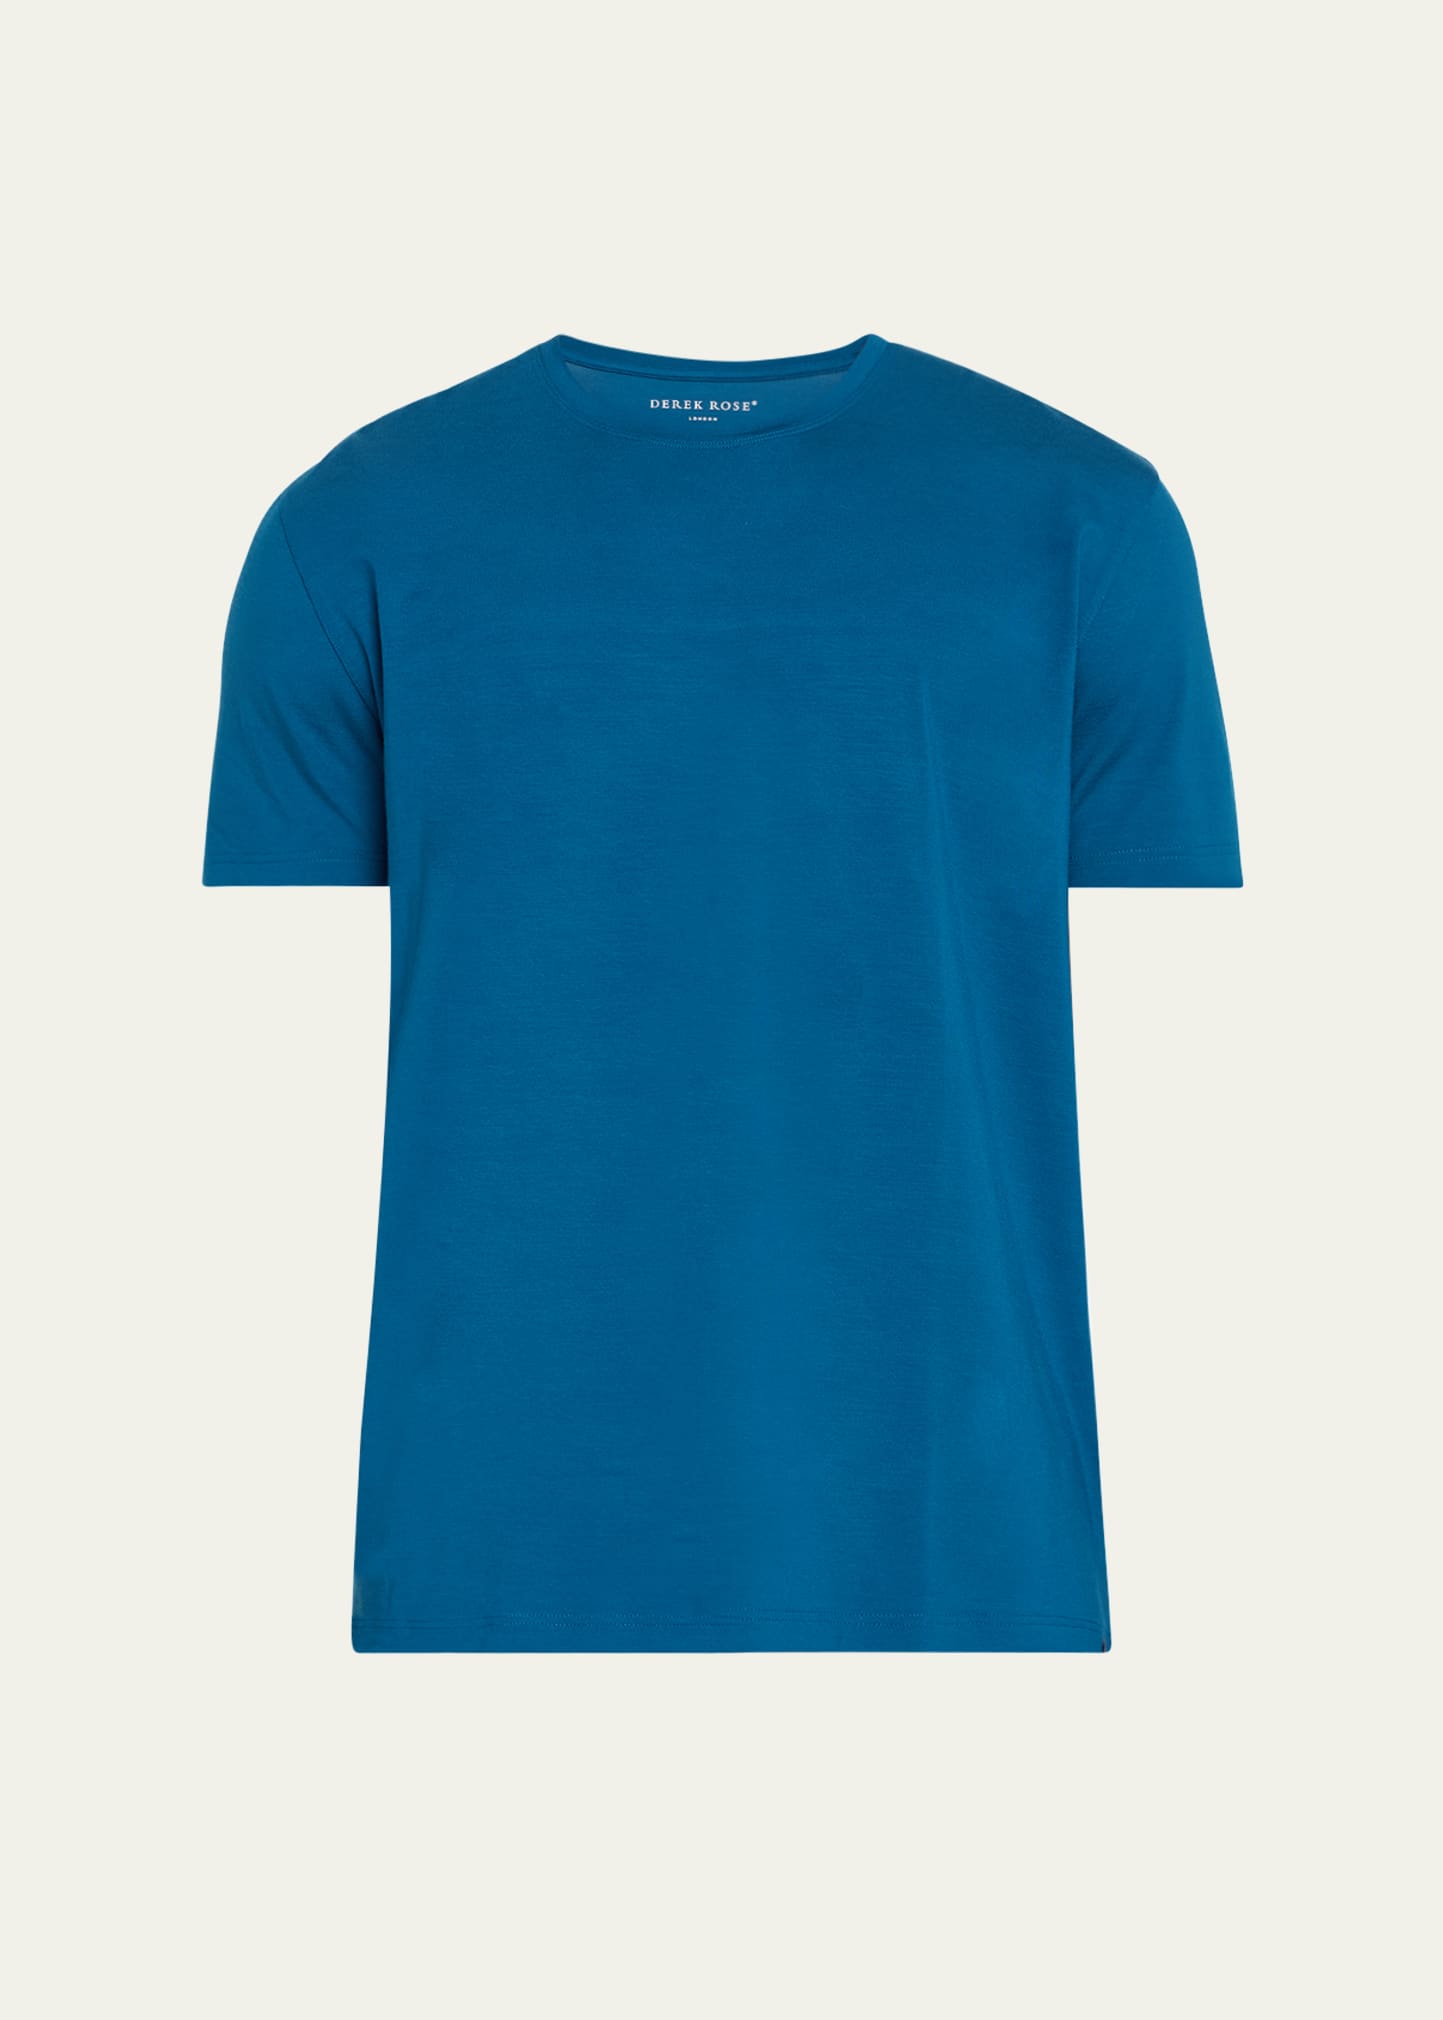 Men's Basel 17 Modal T-Shirt